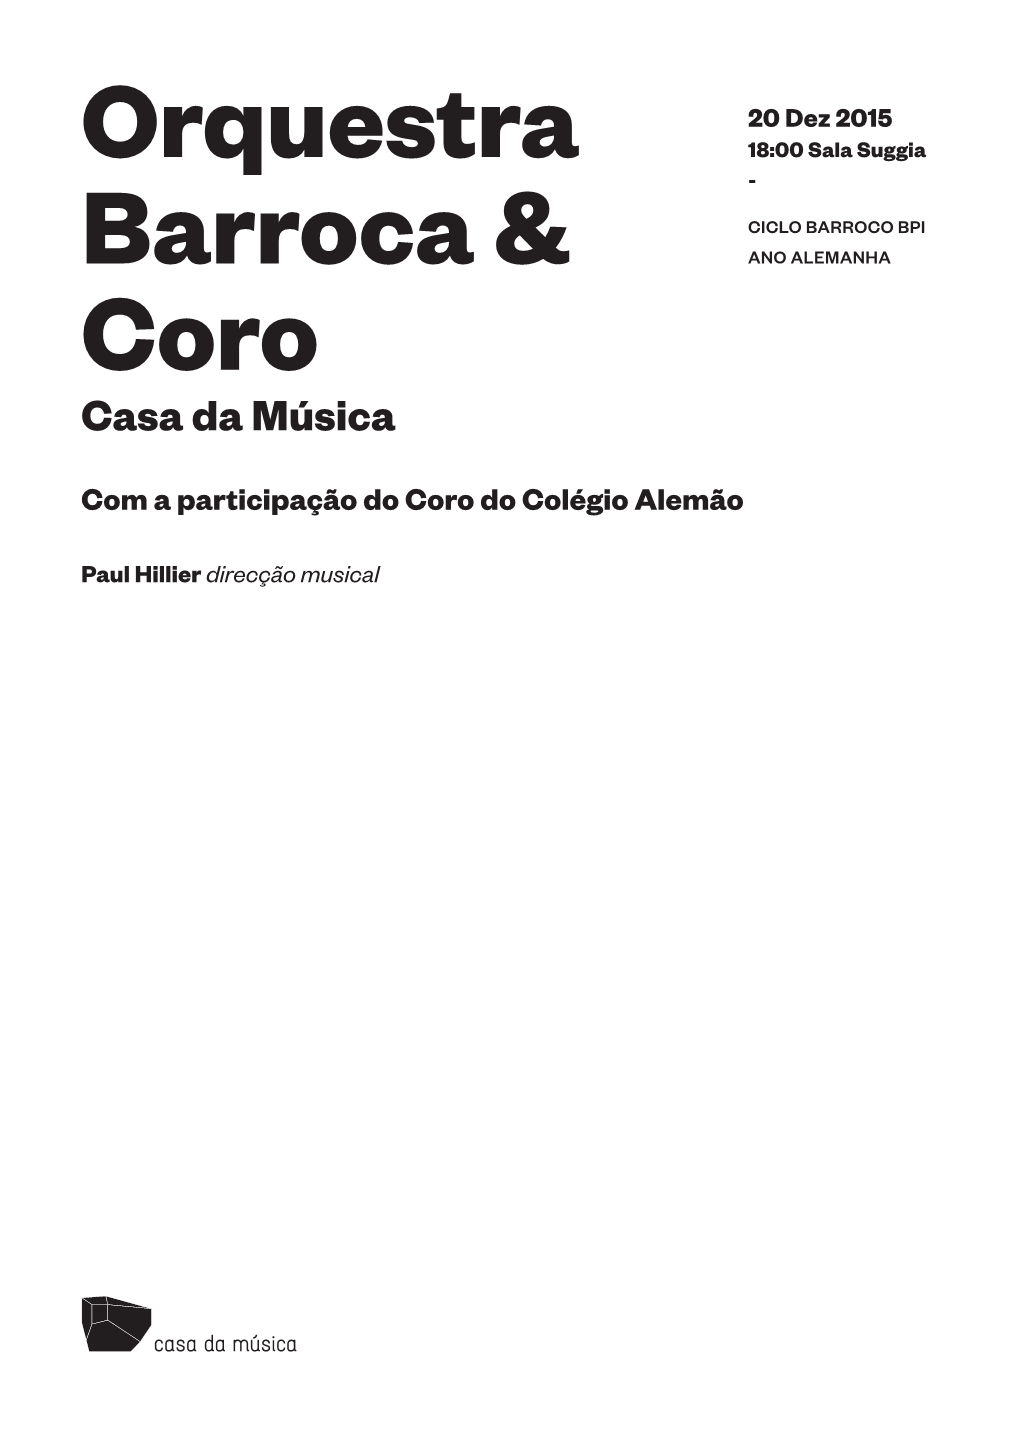 Orquestra Barroca & Coro